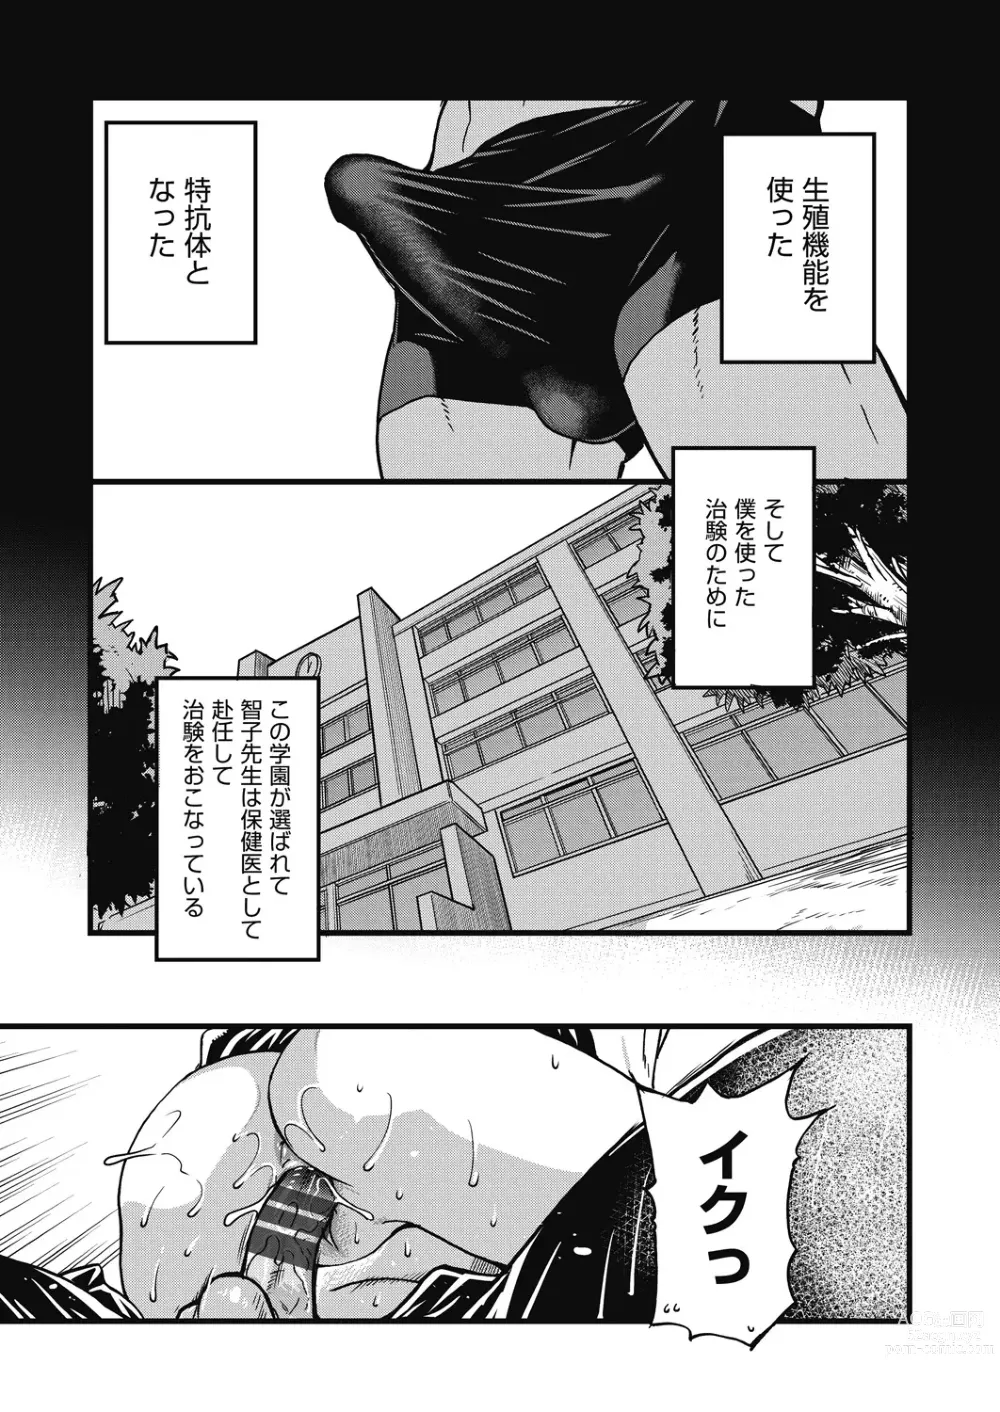 Page 272 of manga Boku no Seieki de Honpuku Kaiyu!!